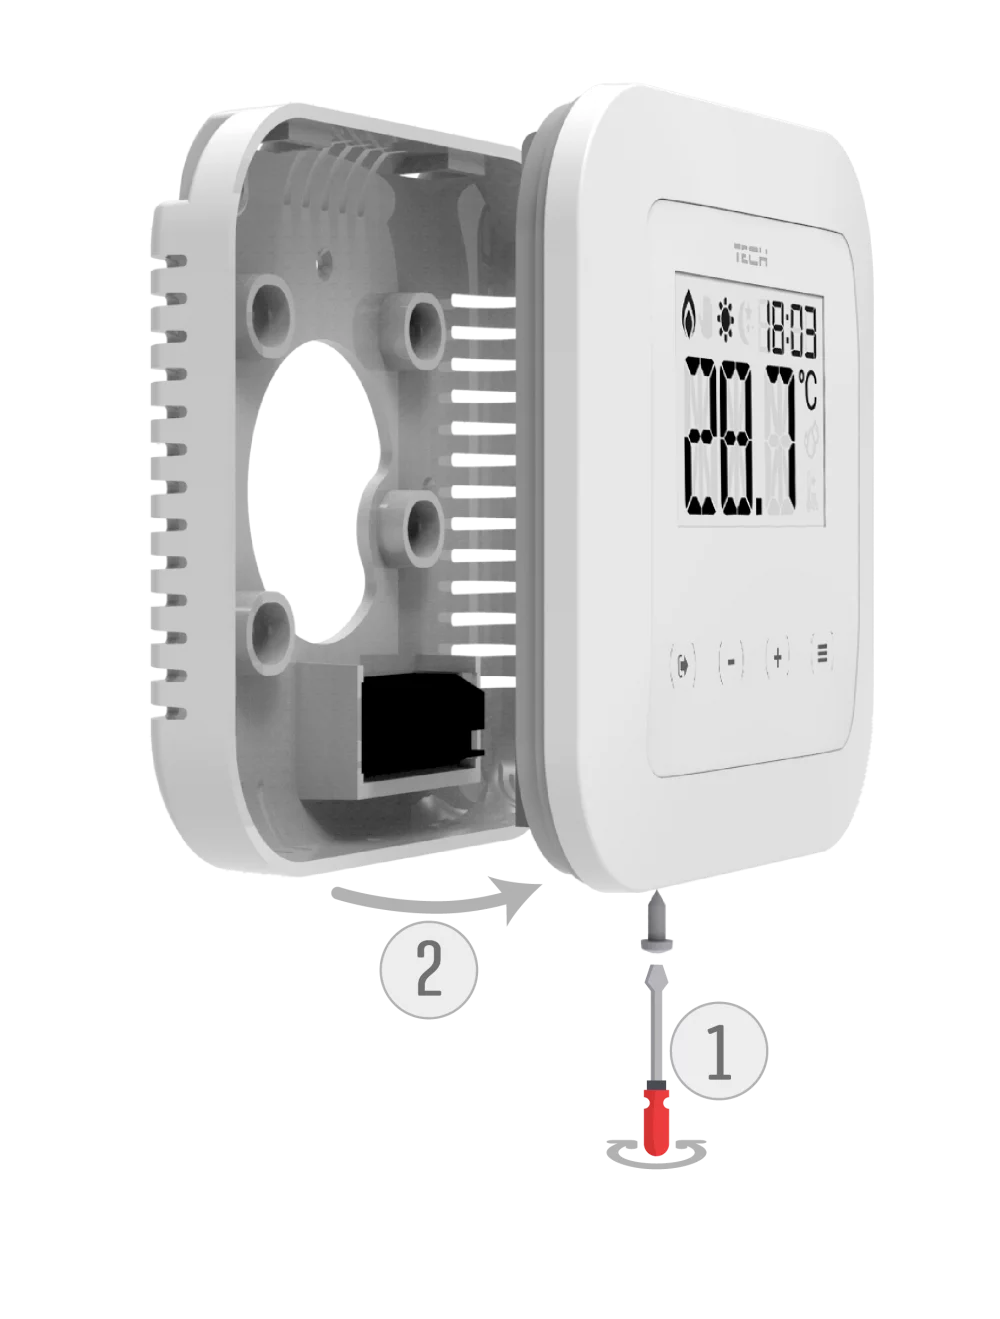 Dvoupolohové pokojové termostaty s běžnou komunikací (on / off) - EU-295 v3